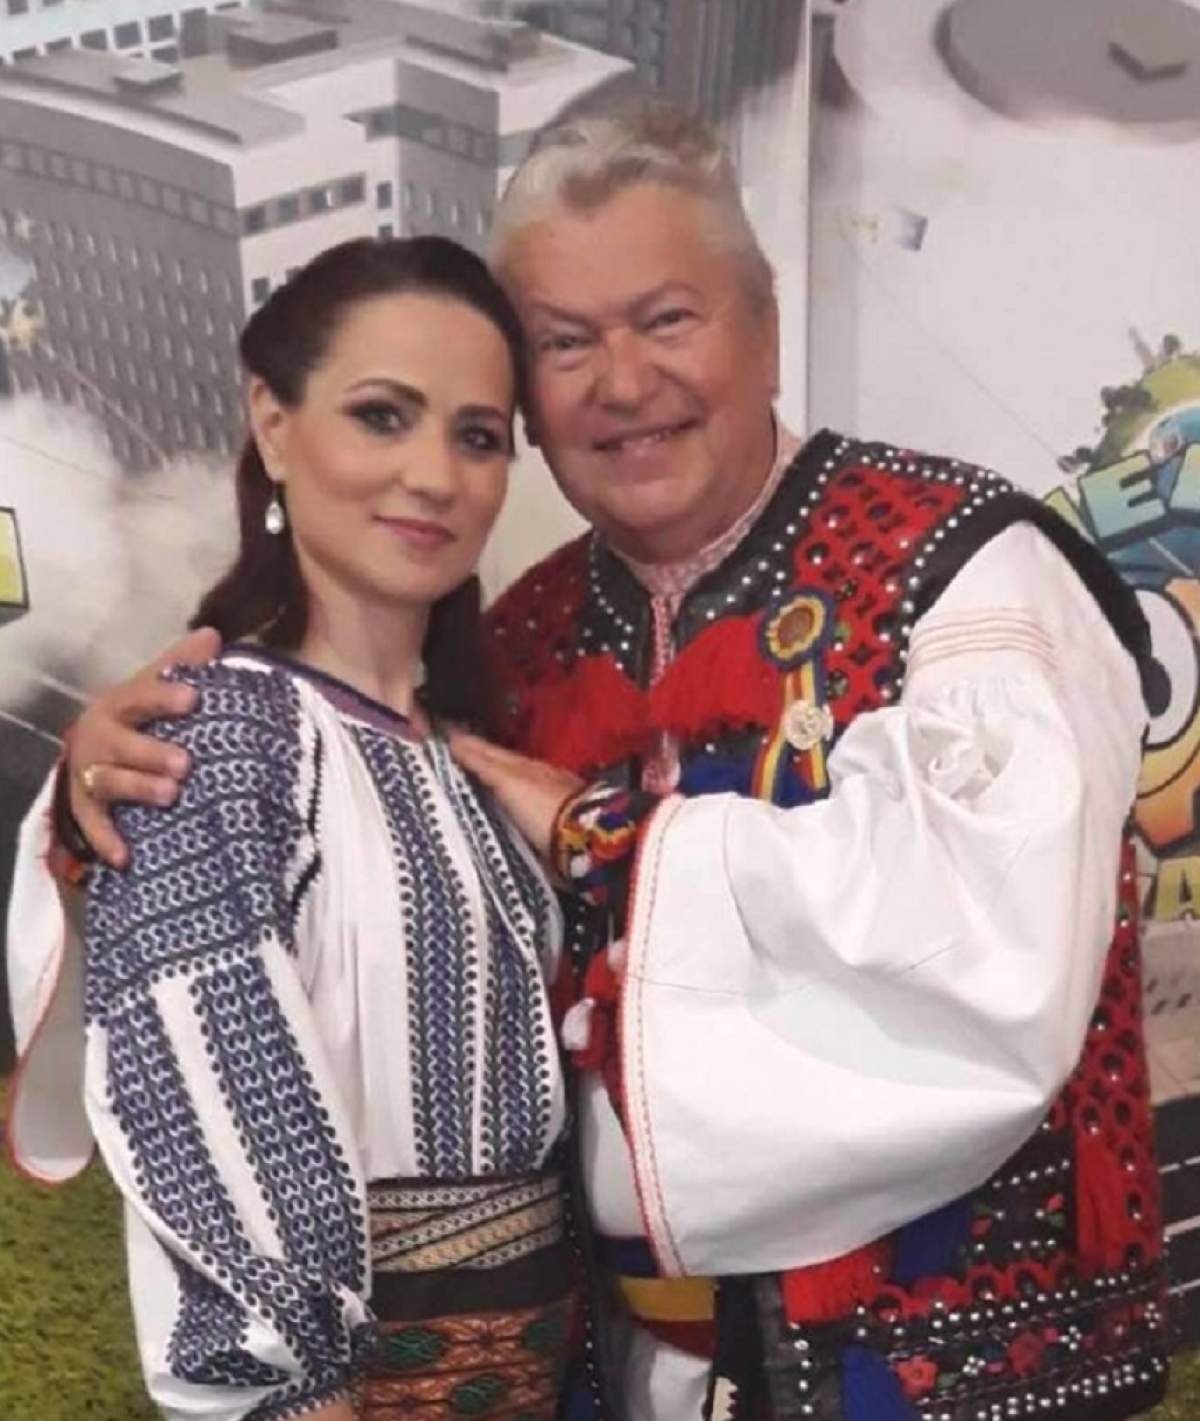 VIDEO / Gheorghe Turda şi noua iubită, interviu cum rar ţi-e dat să vezi: "Ne completăm foarte bine"